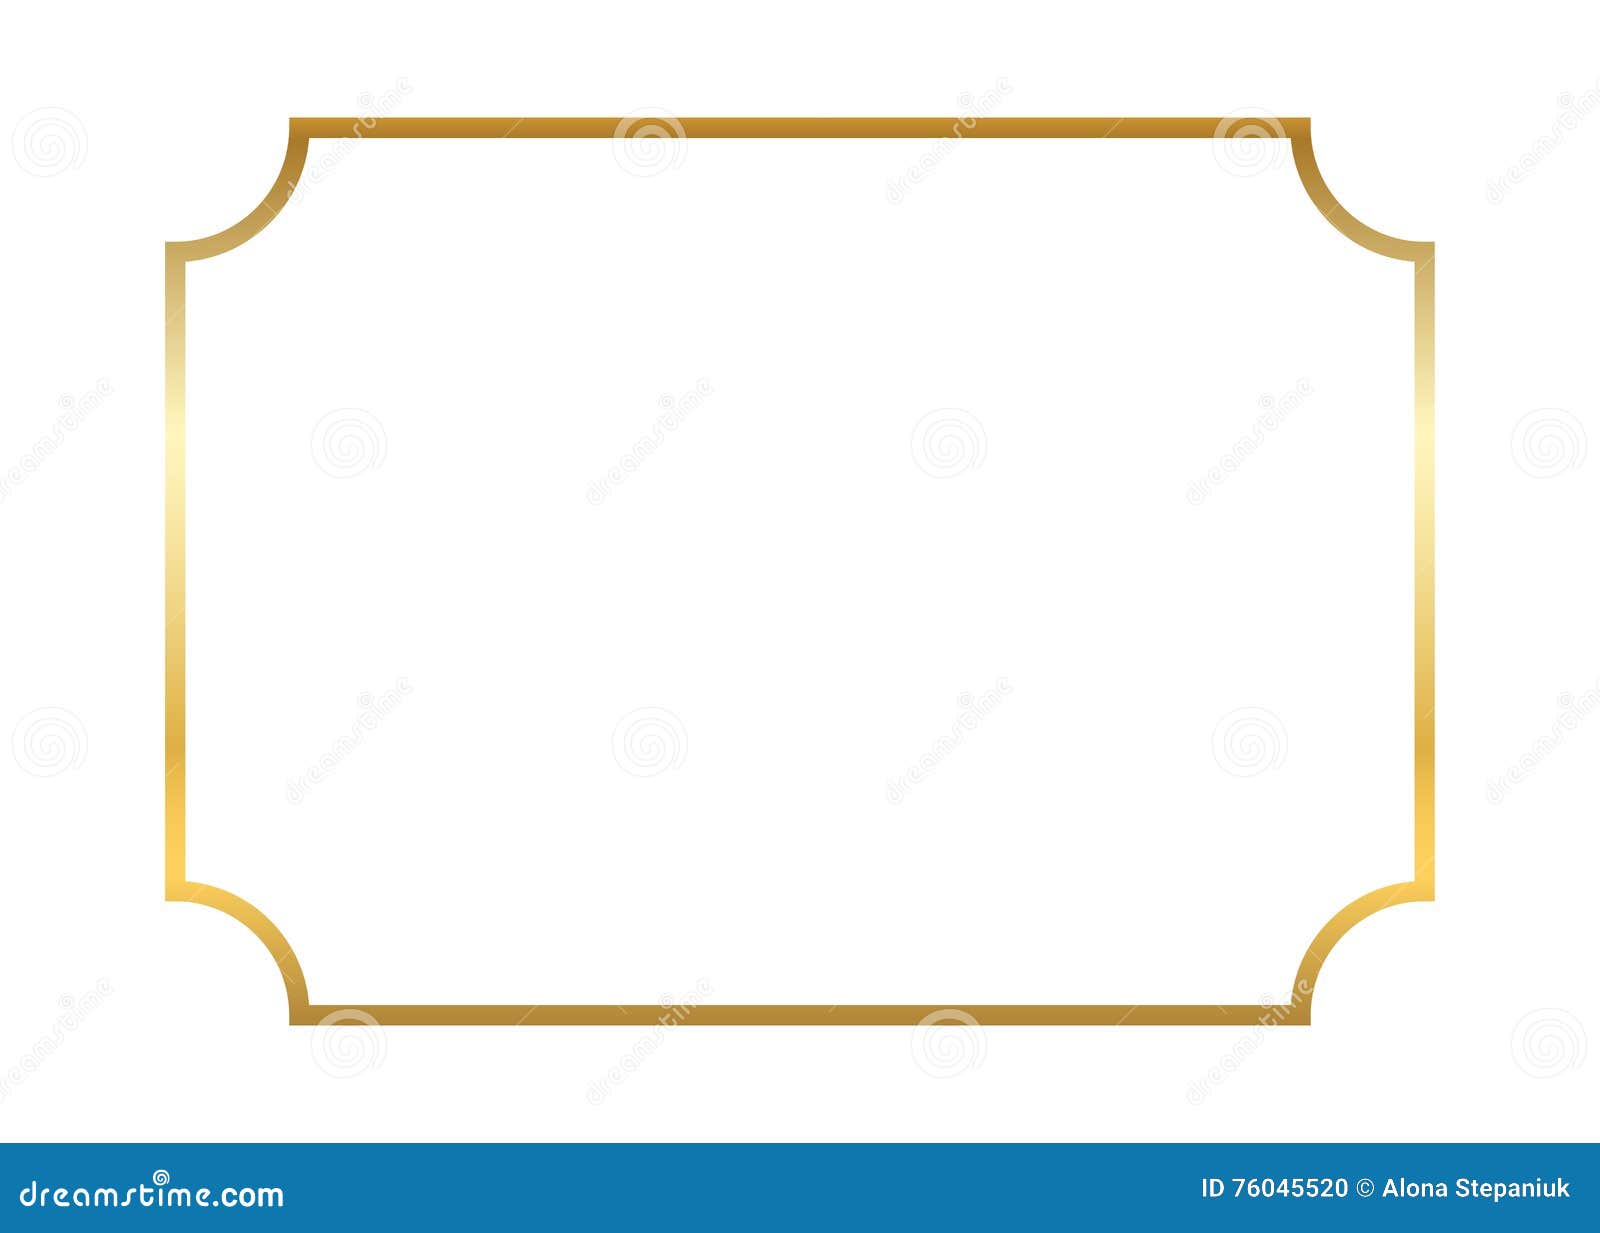 Рамка форма 5. Рамка для таблички. Рамка с вогнутыми углами. Золотистые фигурные рамки. Фигурная рамка прямоугольная.